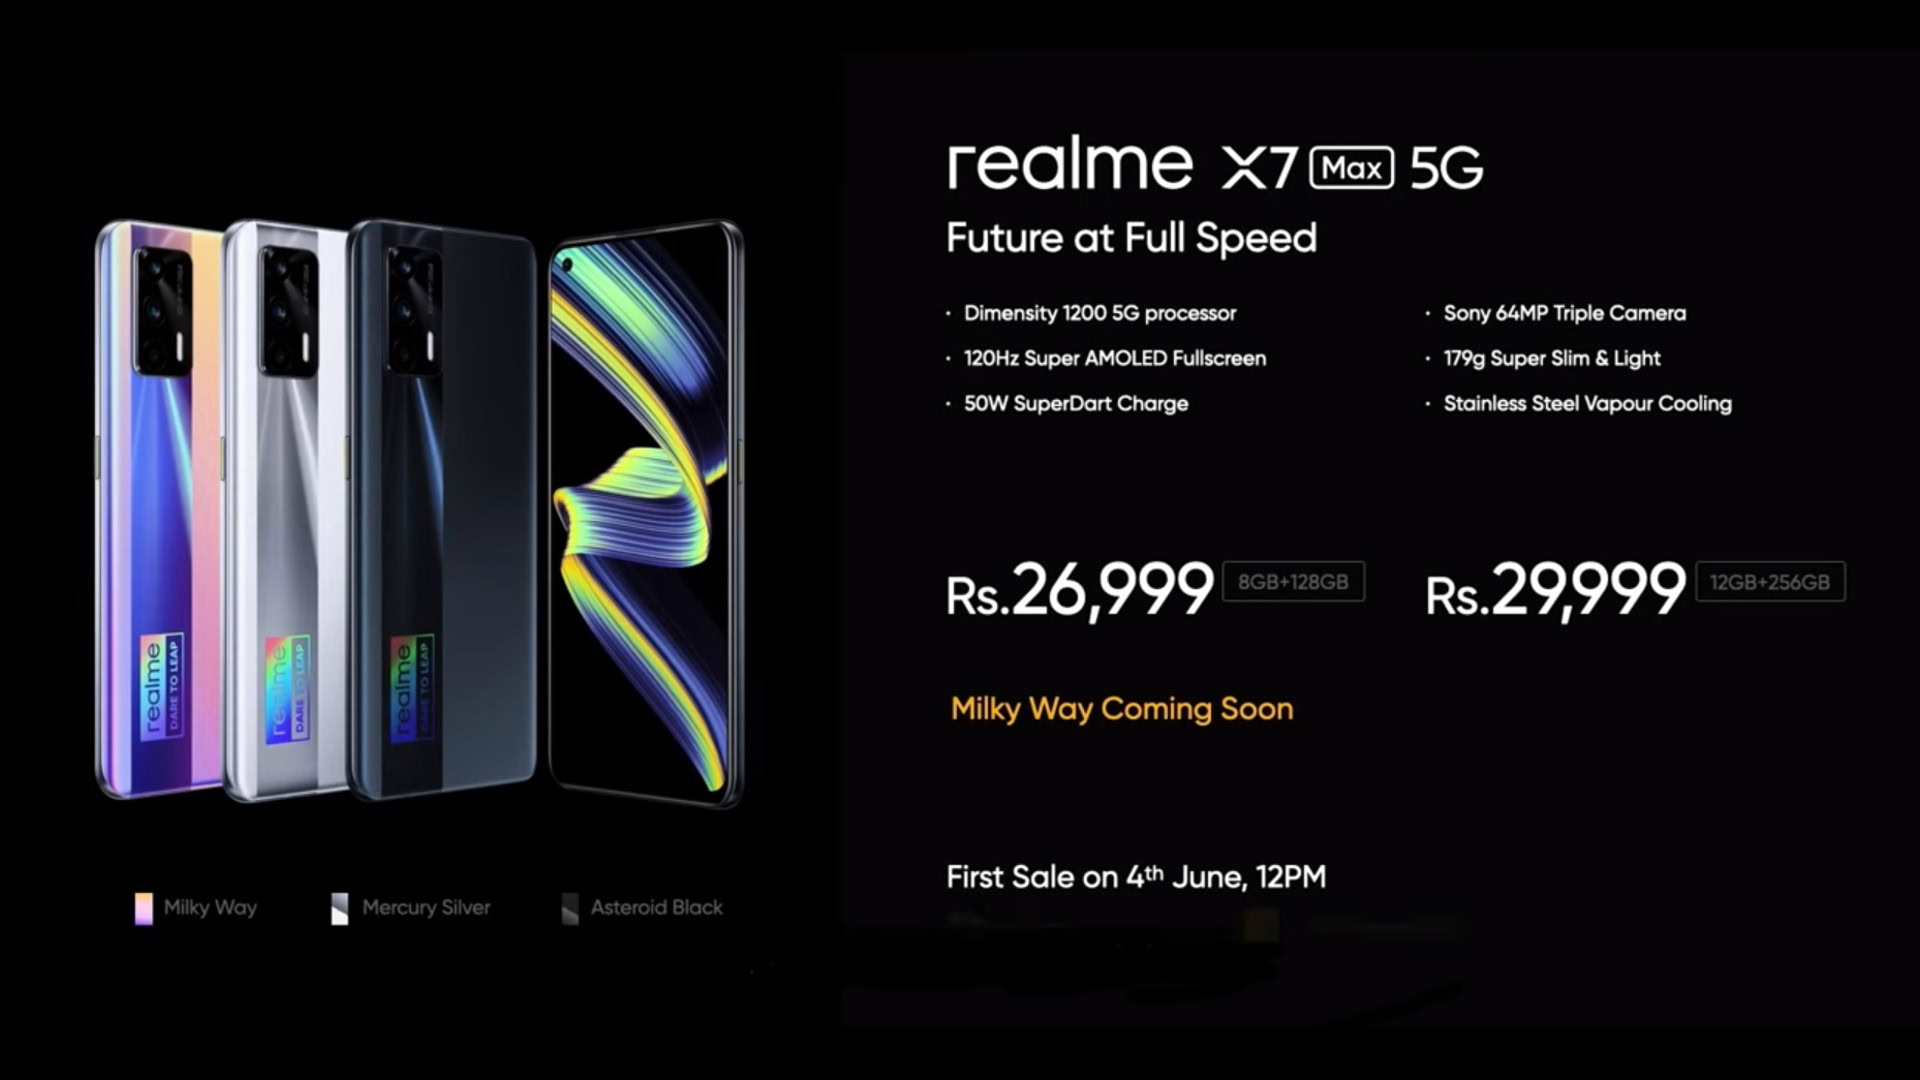 realme X7 Max 5G pricing